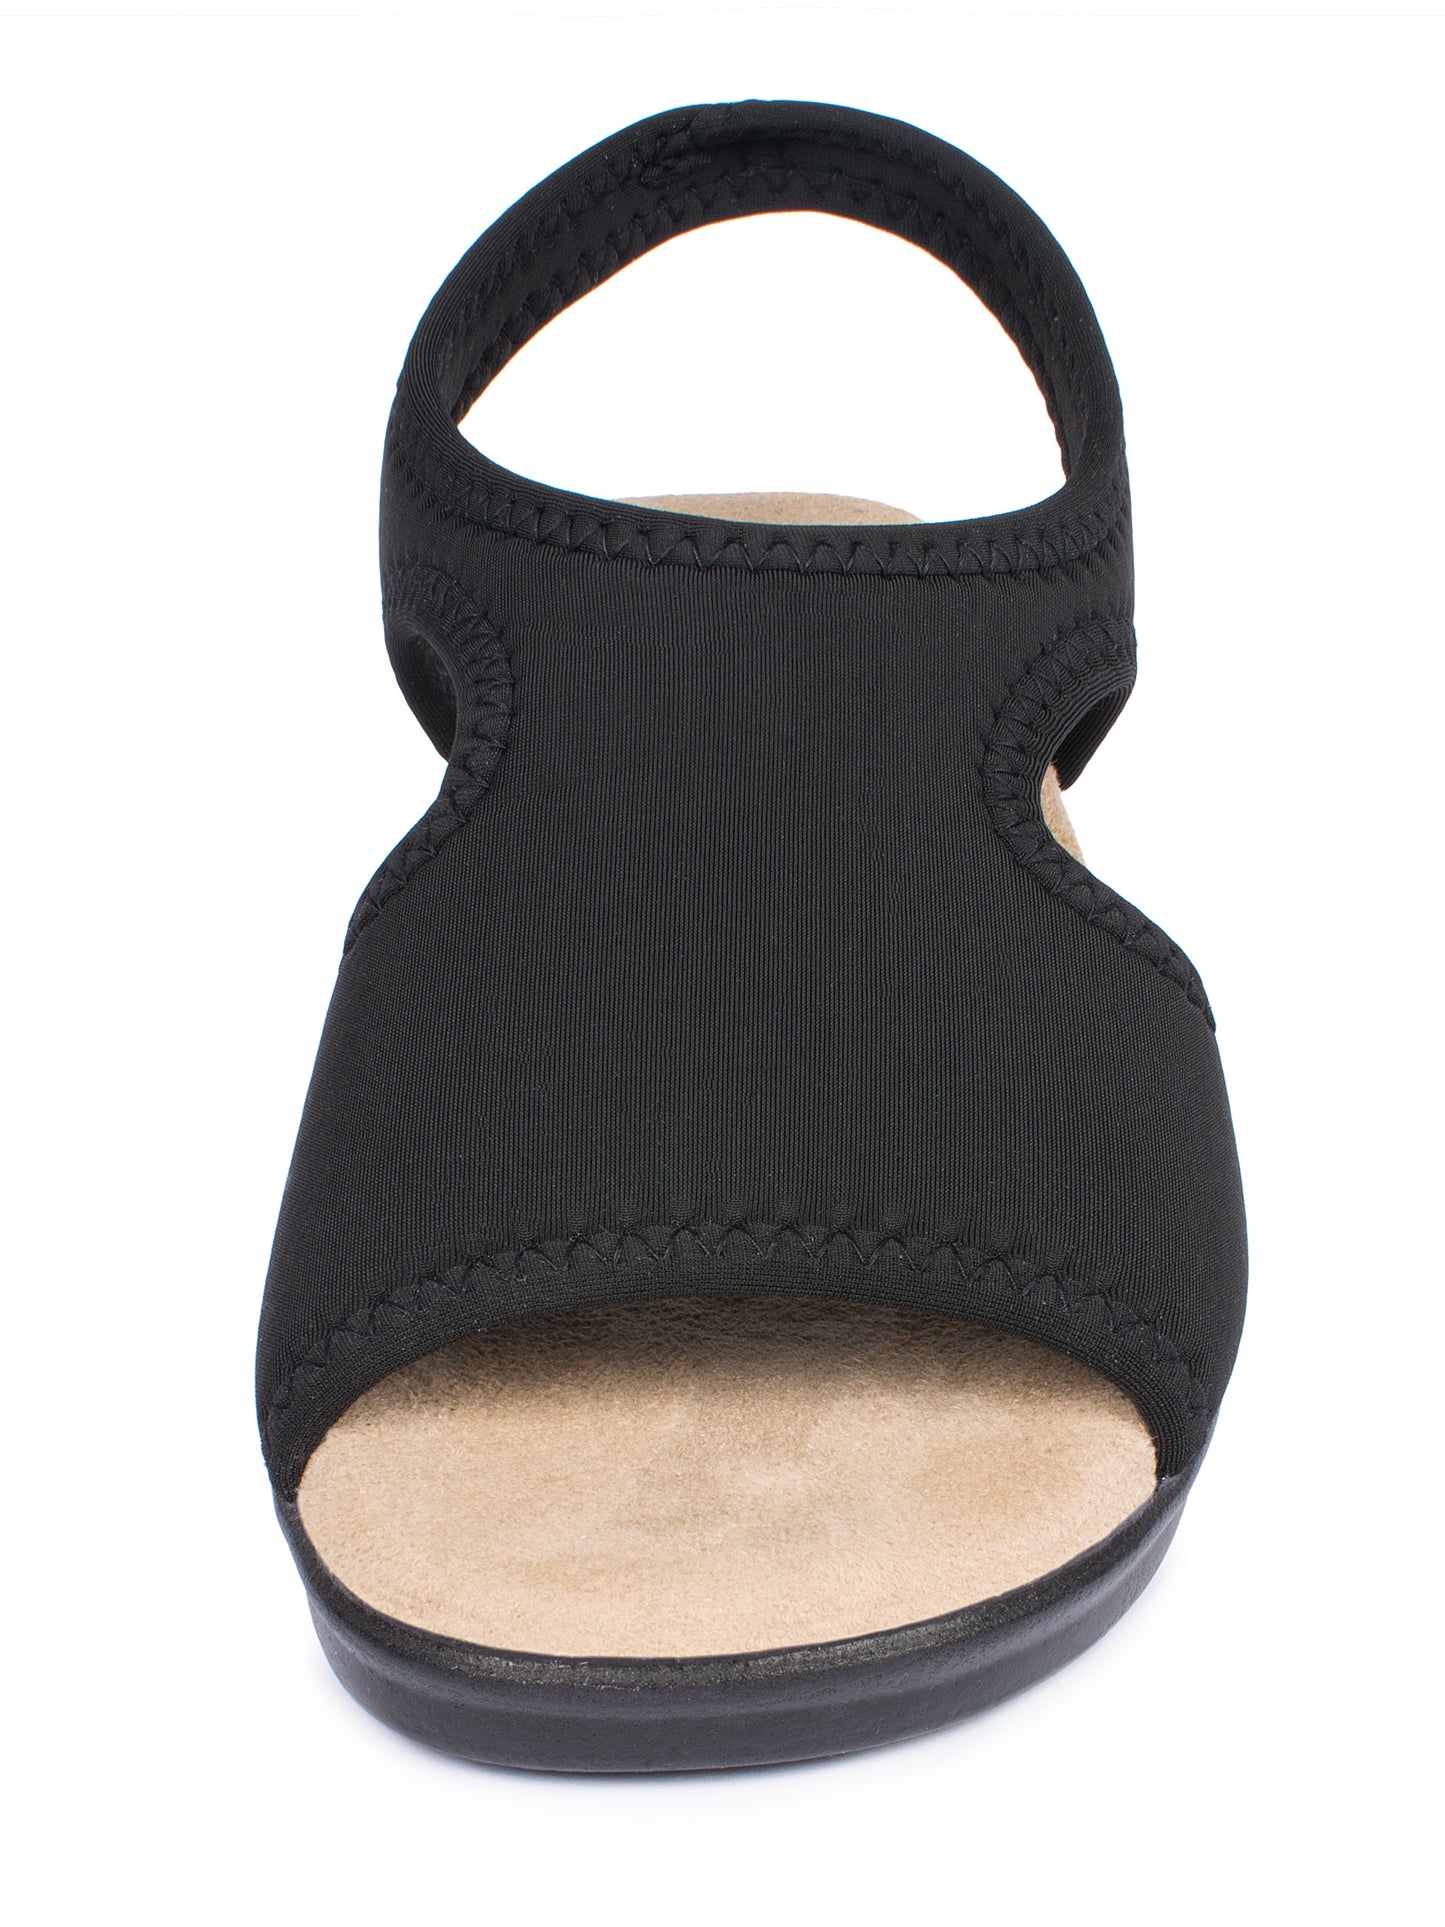 Damen Stretch Sandalette Modell Stretch 05 von Aerosoft in Farbe schwarz von vorne